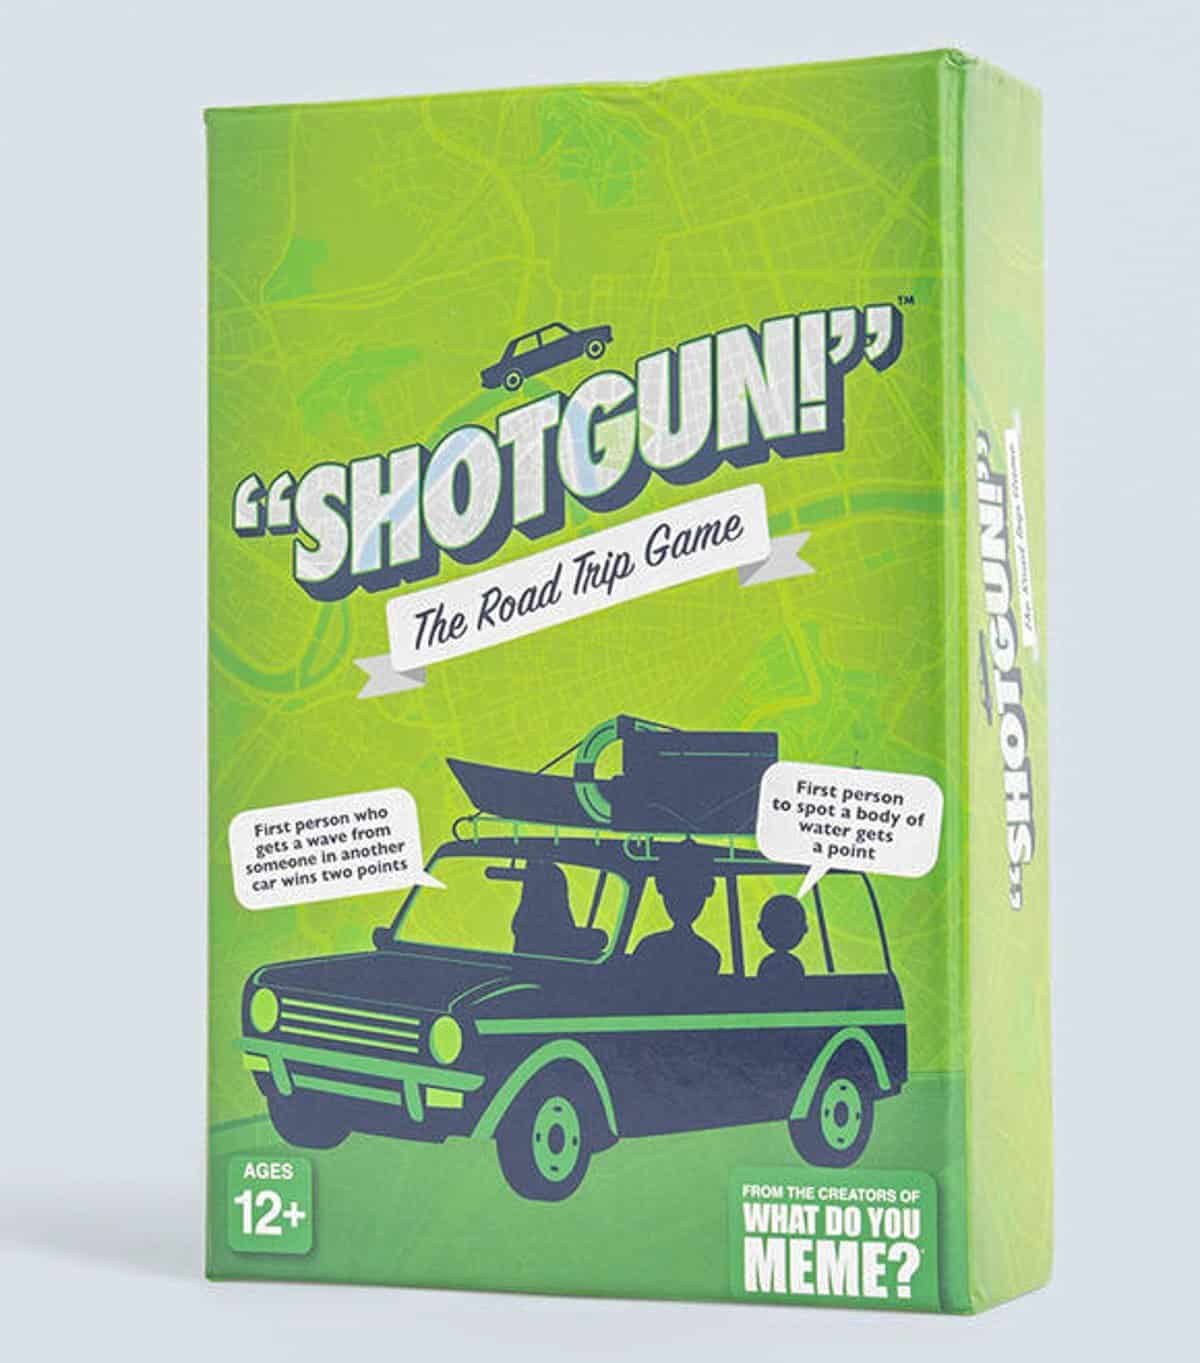 Shotgun-RoadTrip - a travel game